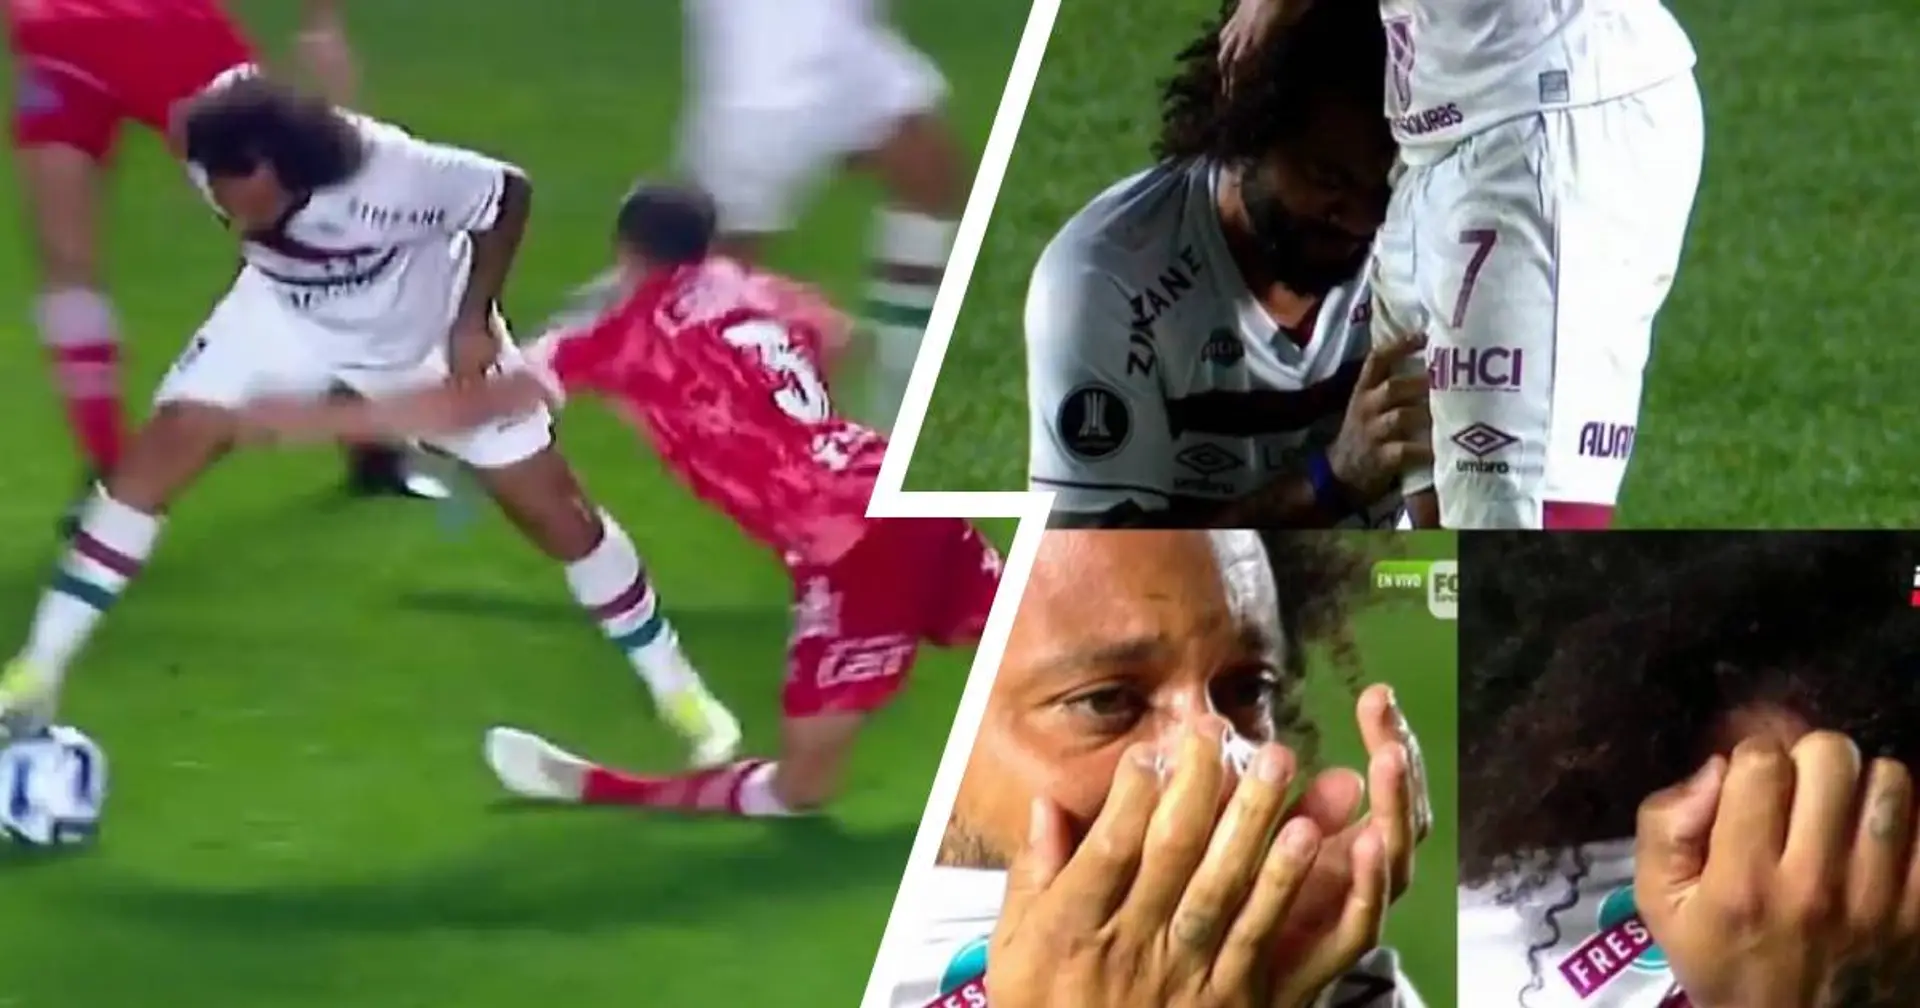 L'ex stella del Real Madrid in lacrime dopo aver rotto la gamba all'avversario - le immagini 